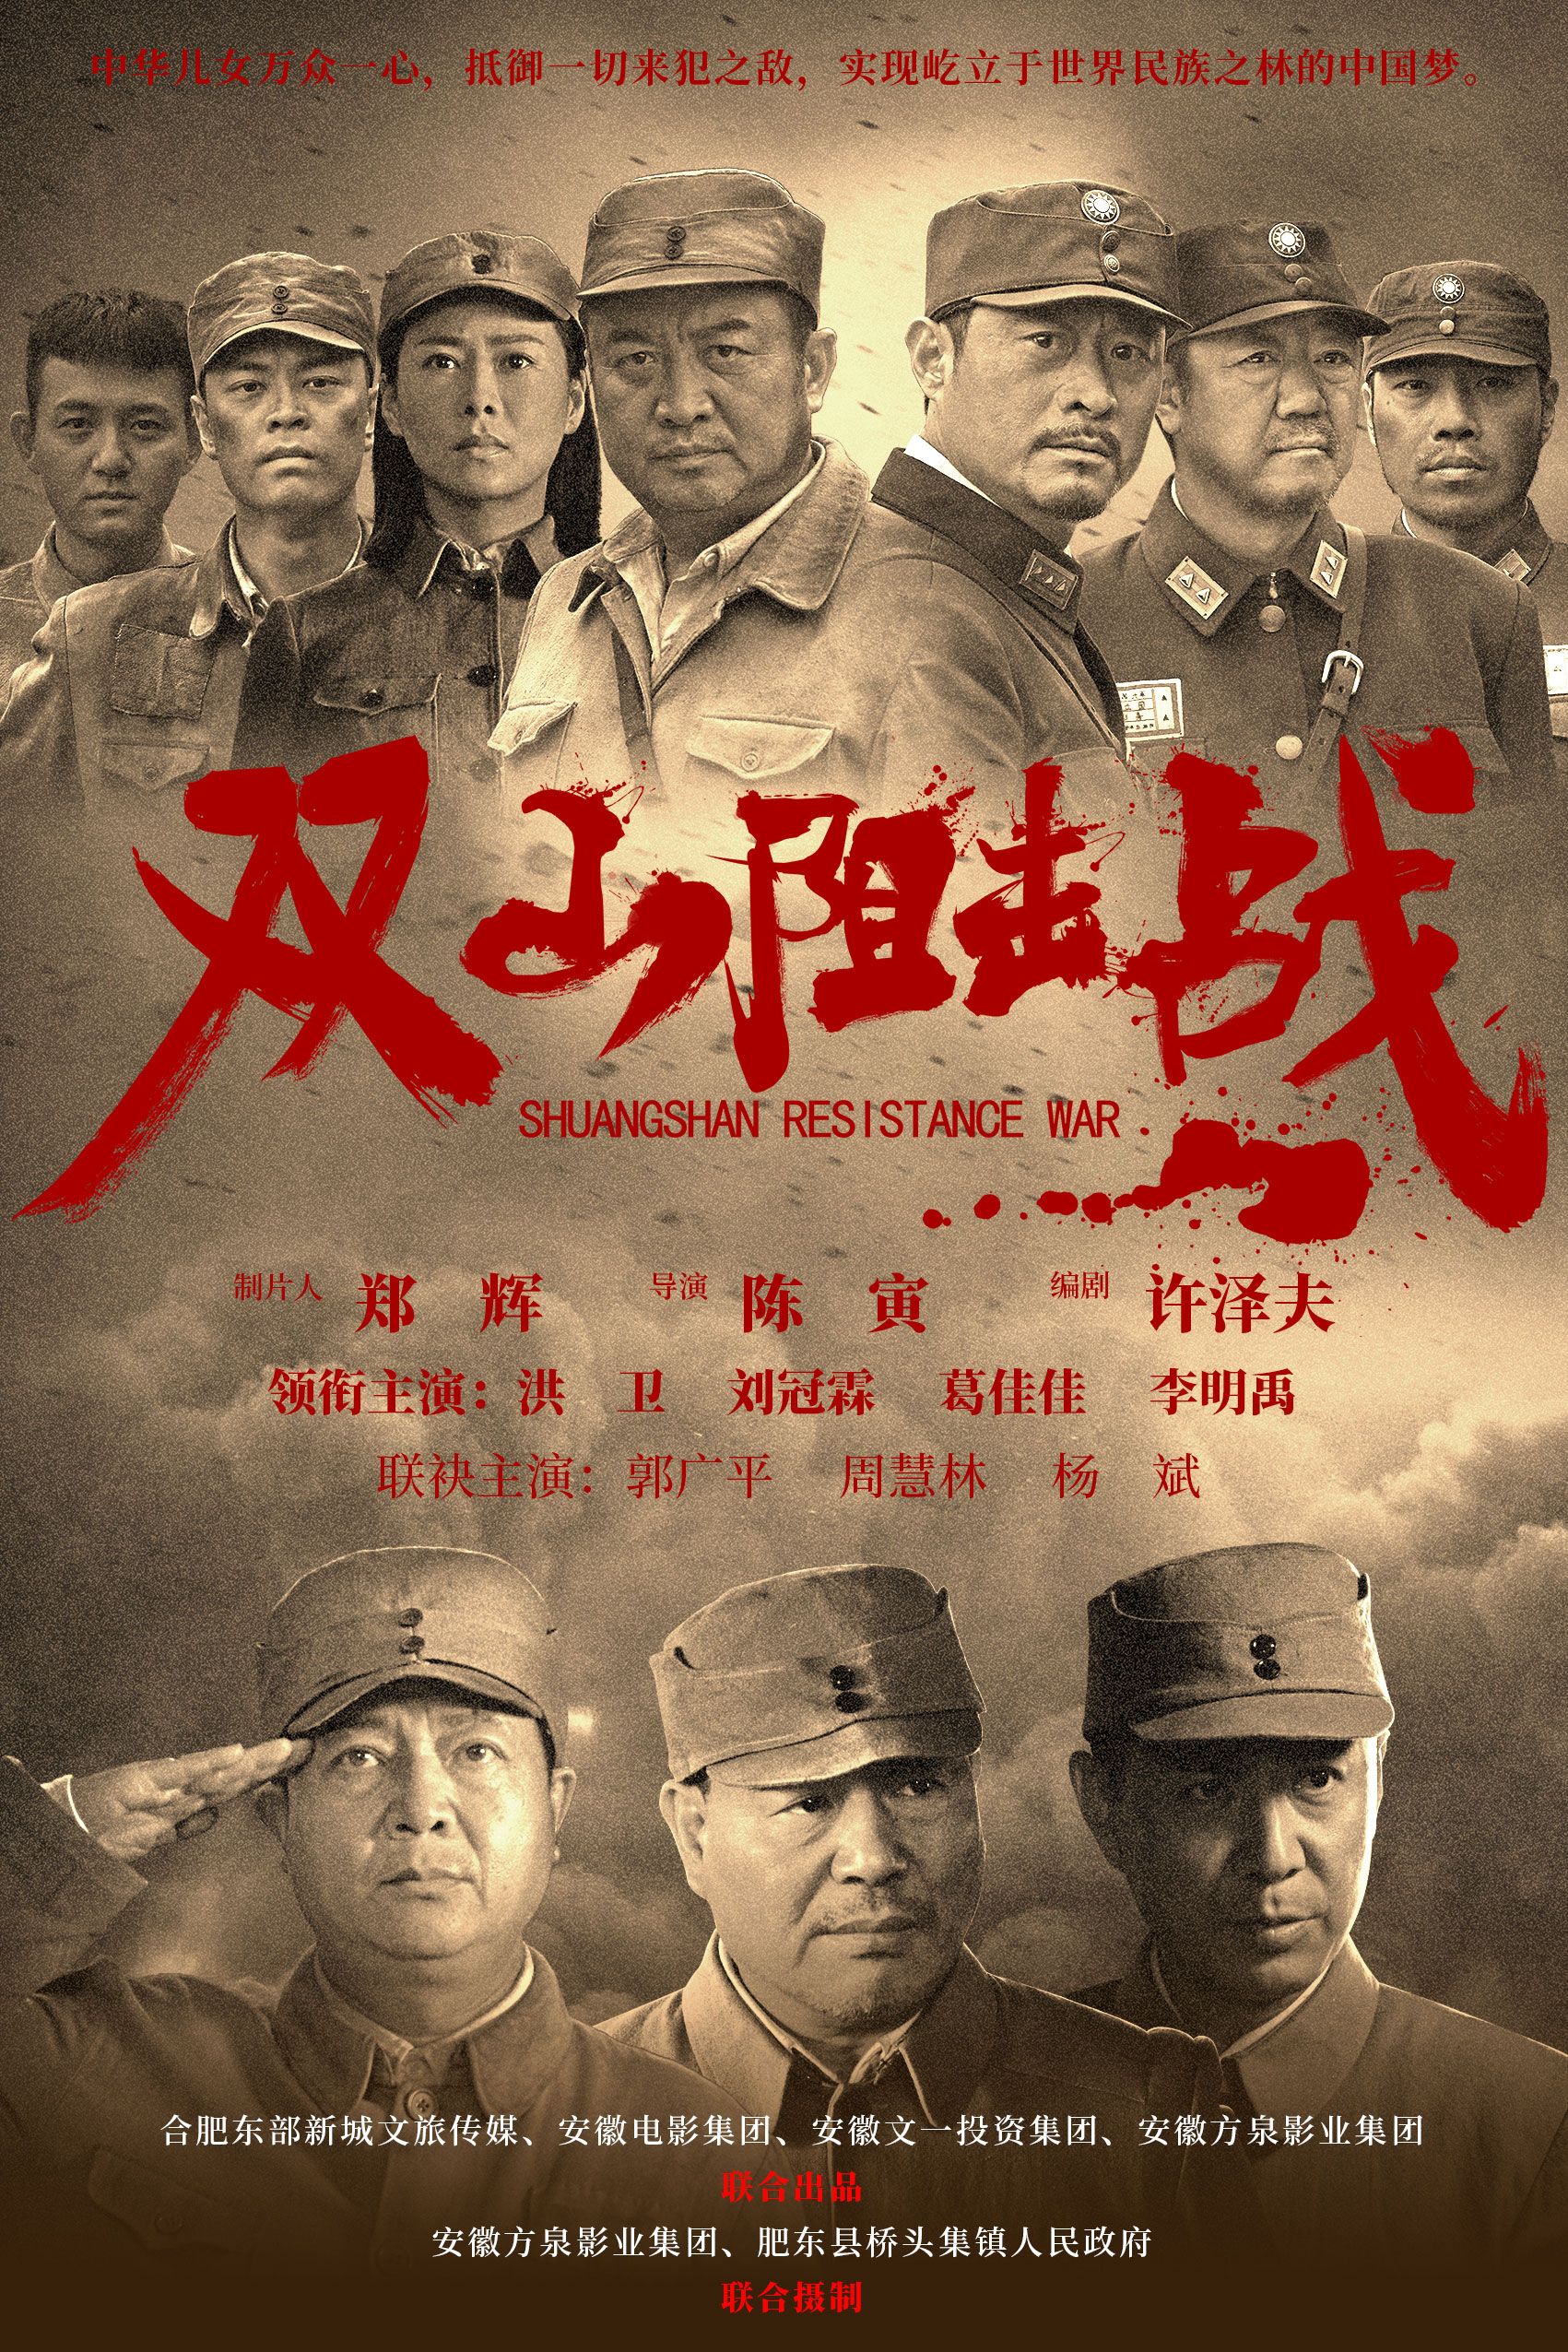 双山阻击战 - Shuang Shan Reistance War